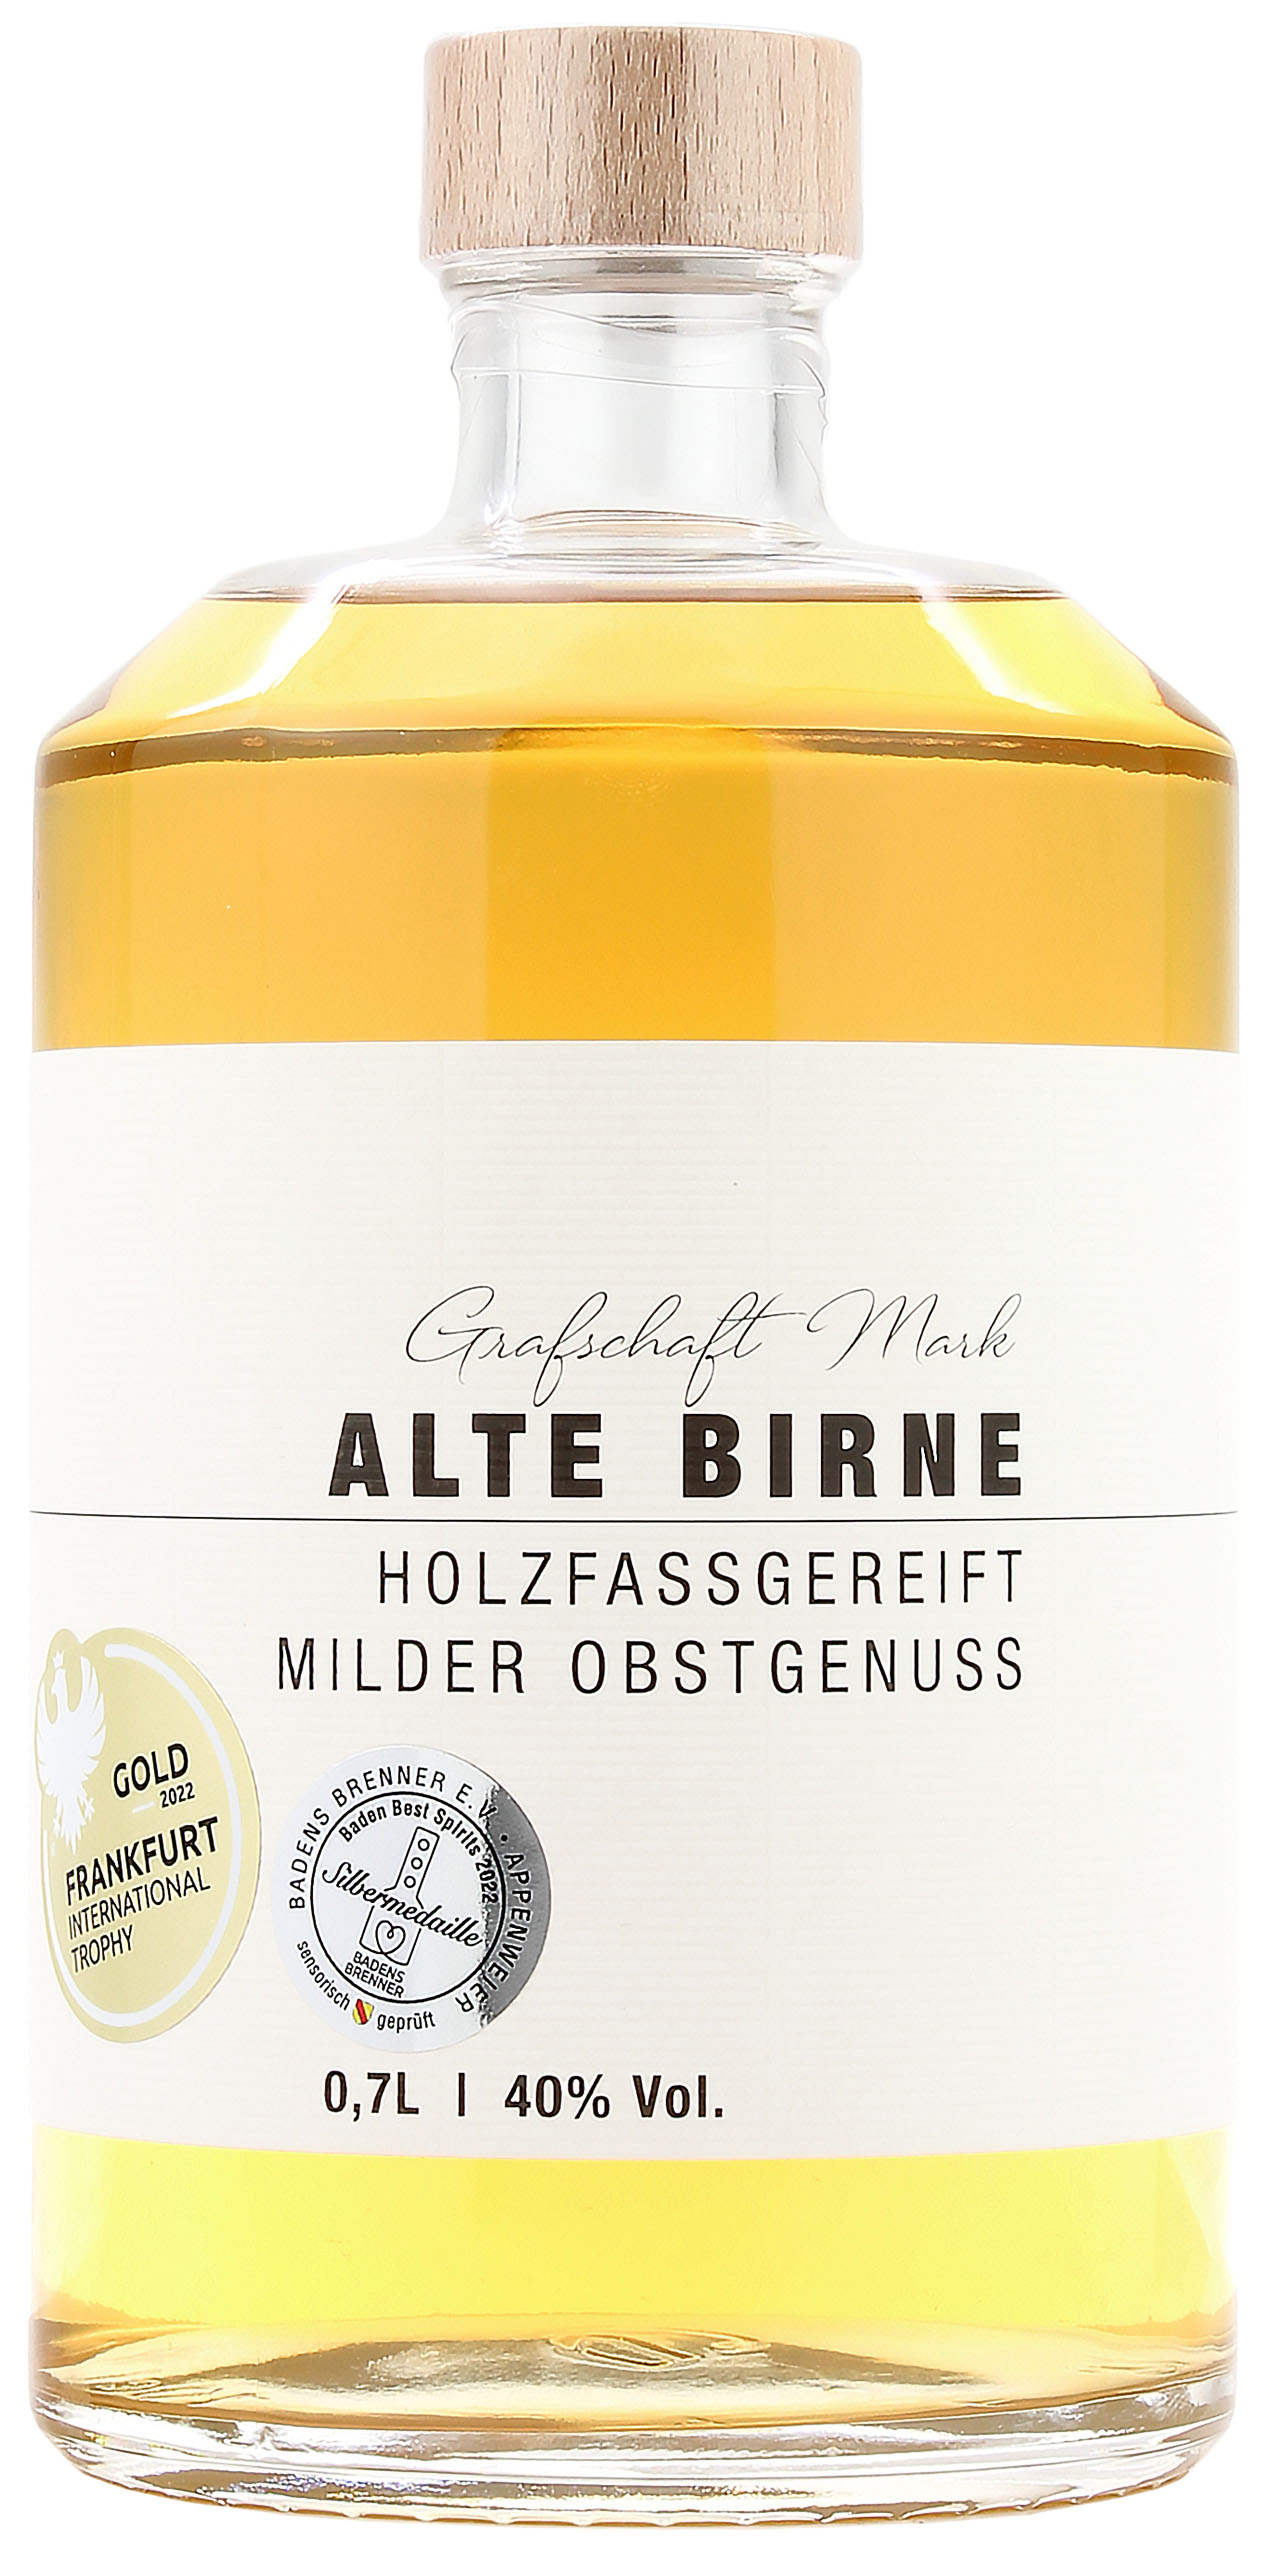 Grafschaft Mark Alte Birne 40.0% 0,7l